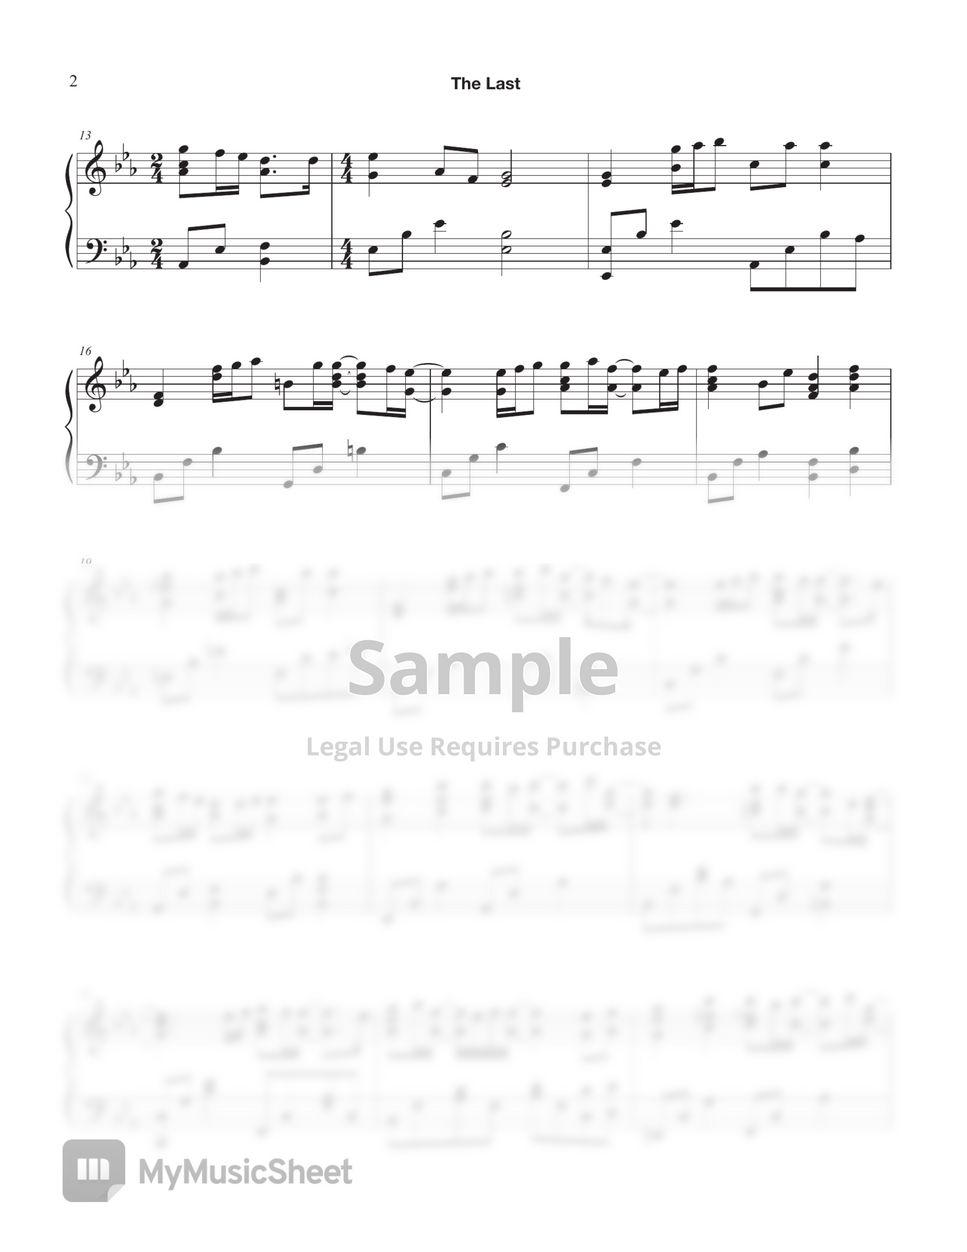 헤이즈 - 마지막 너의 인사 (The Last) Our Blues OST. (Easy Key Transposed) by Tully Piano